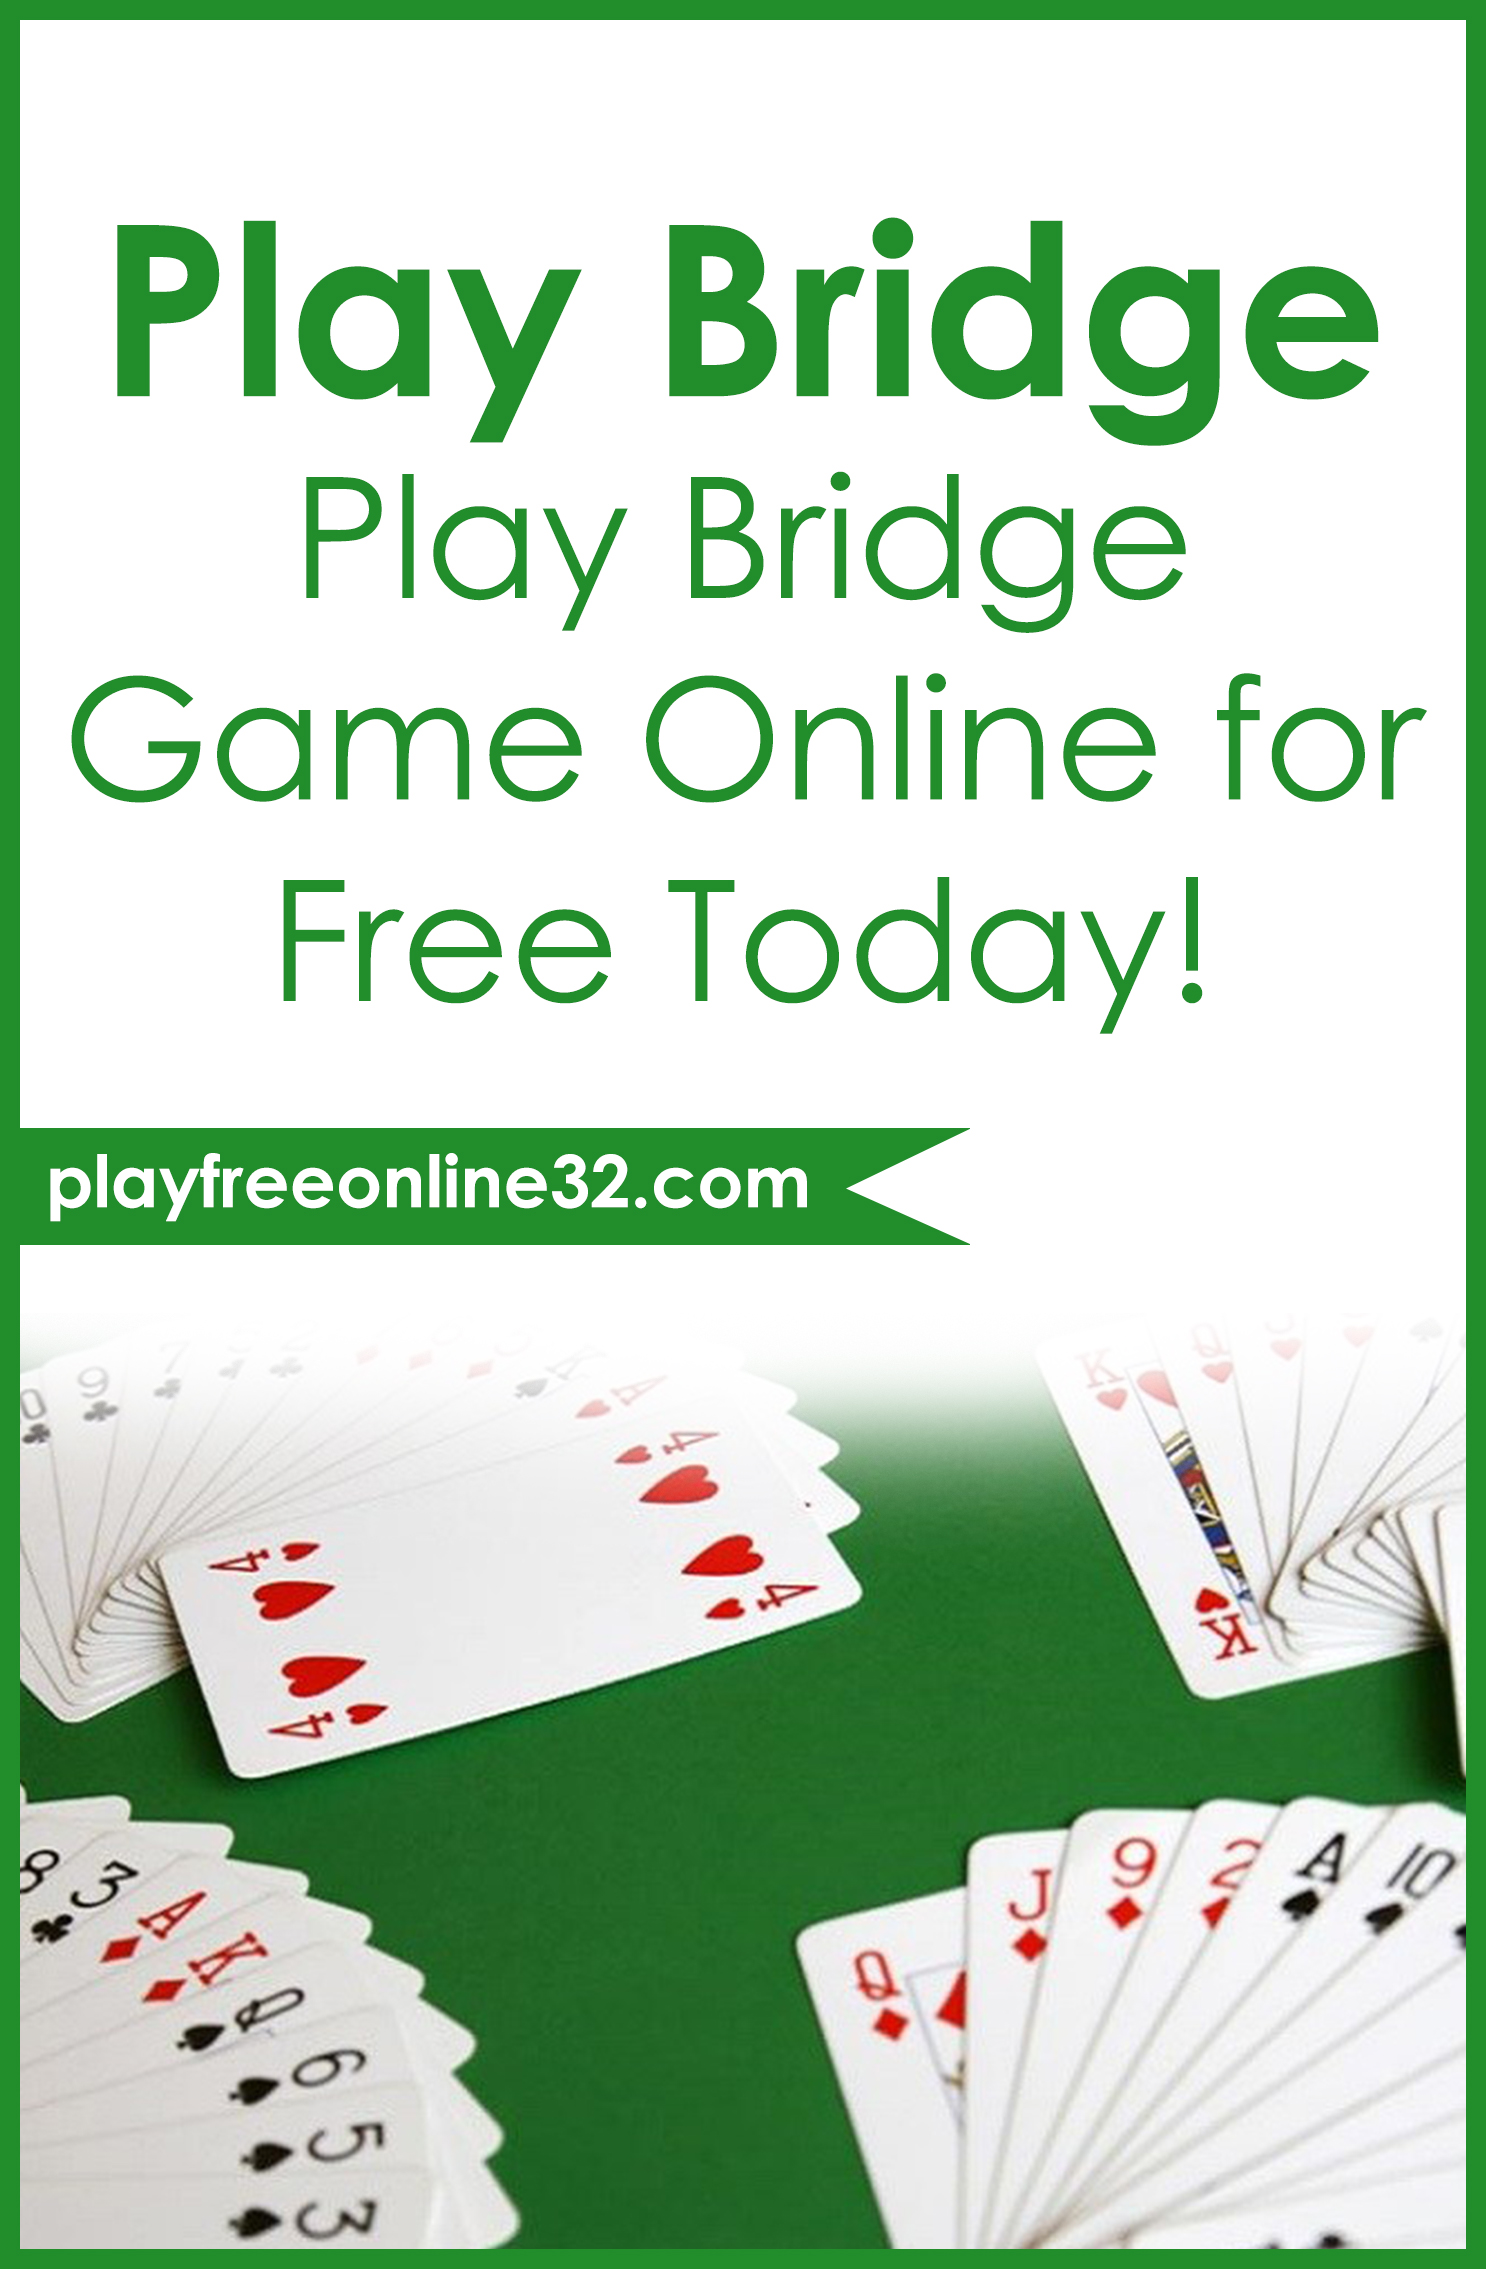 Bridge Game